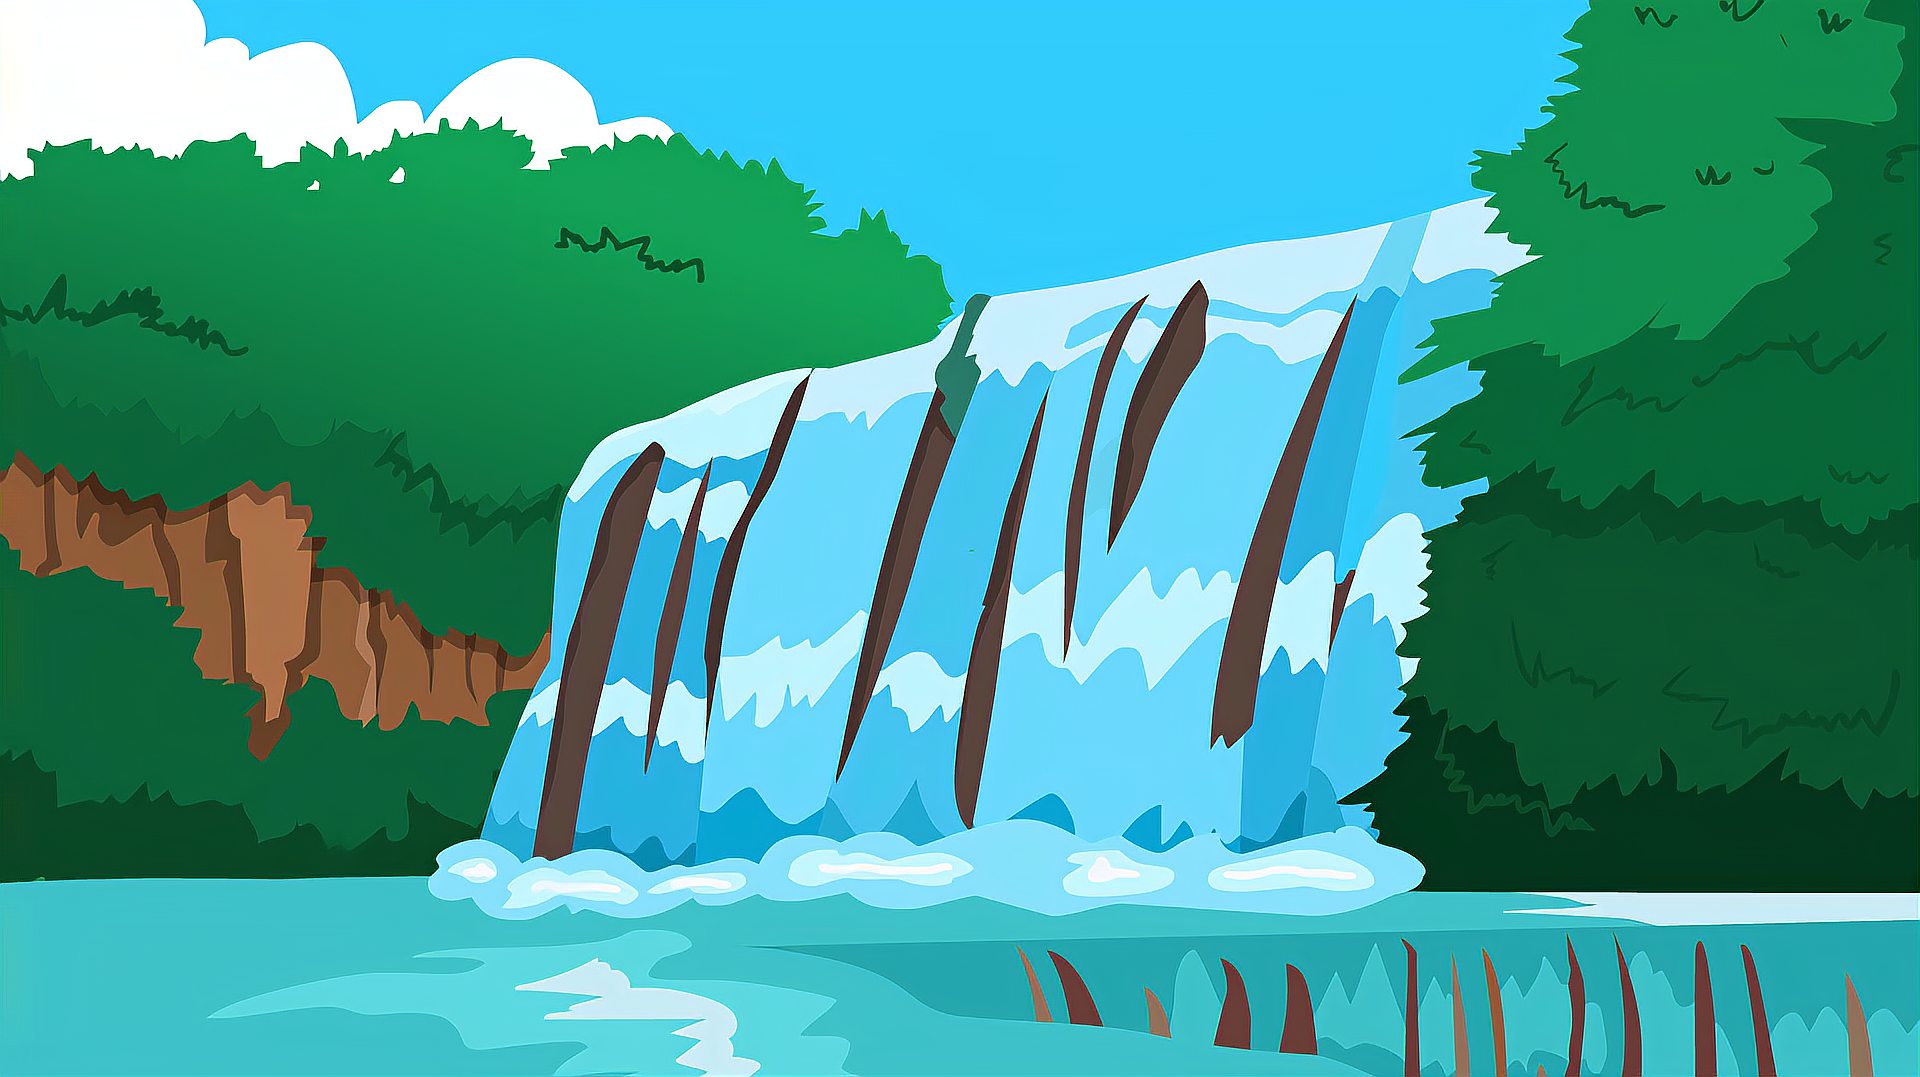 同学们,黄果树瀑布是世界著名大瀑布之一,你知道它在哪里吗